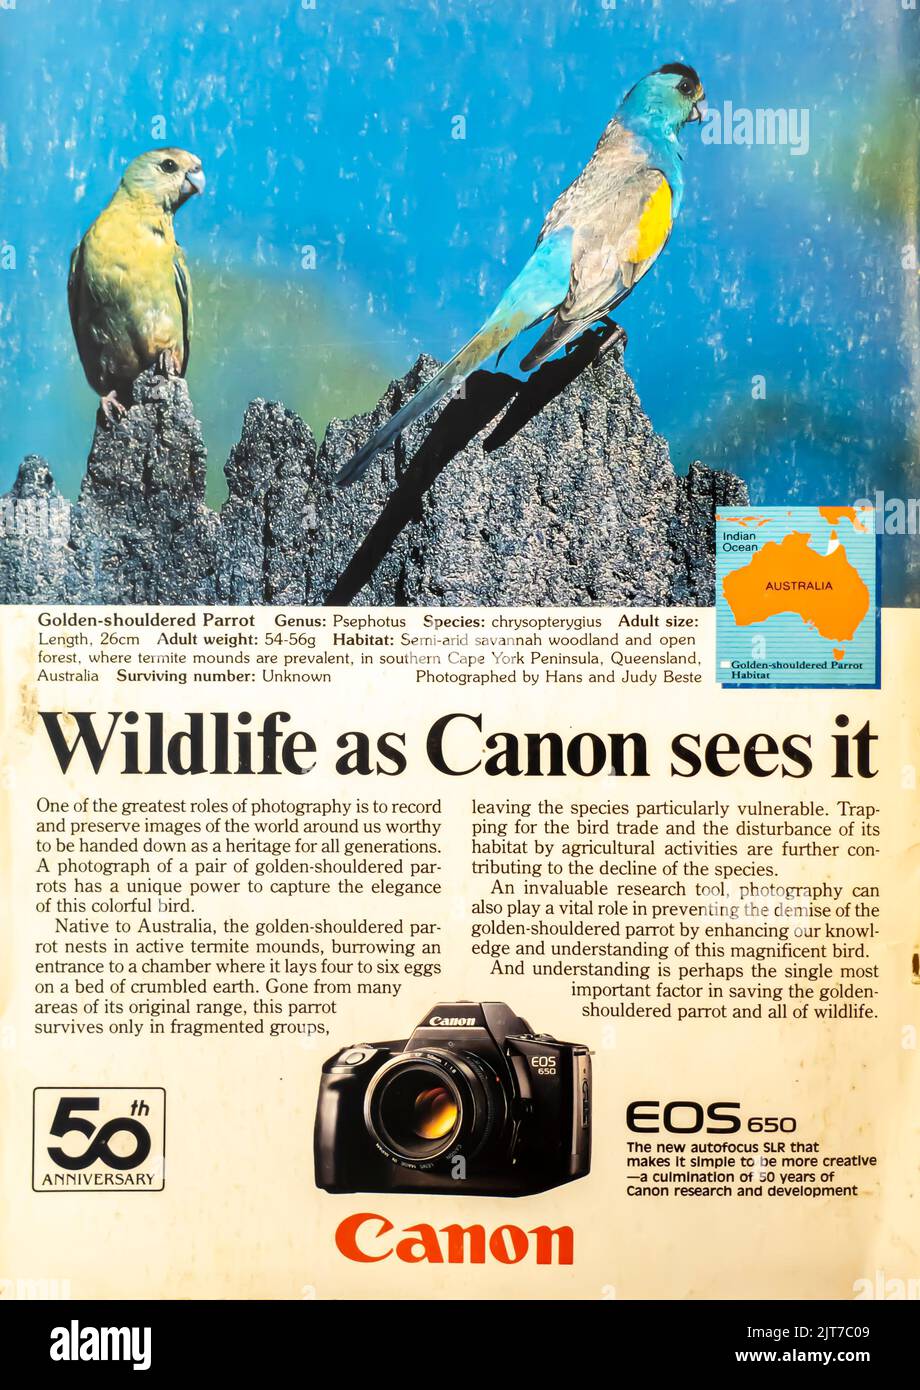 Publicité pour appareil photo Canon EOS 650 placée dans un magazine NatGeo, avril 1987 Banque D'Images